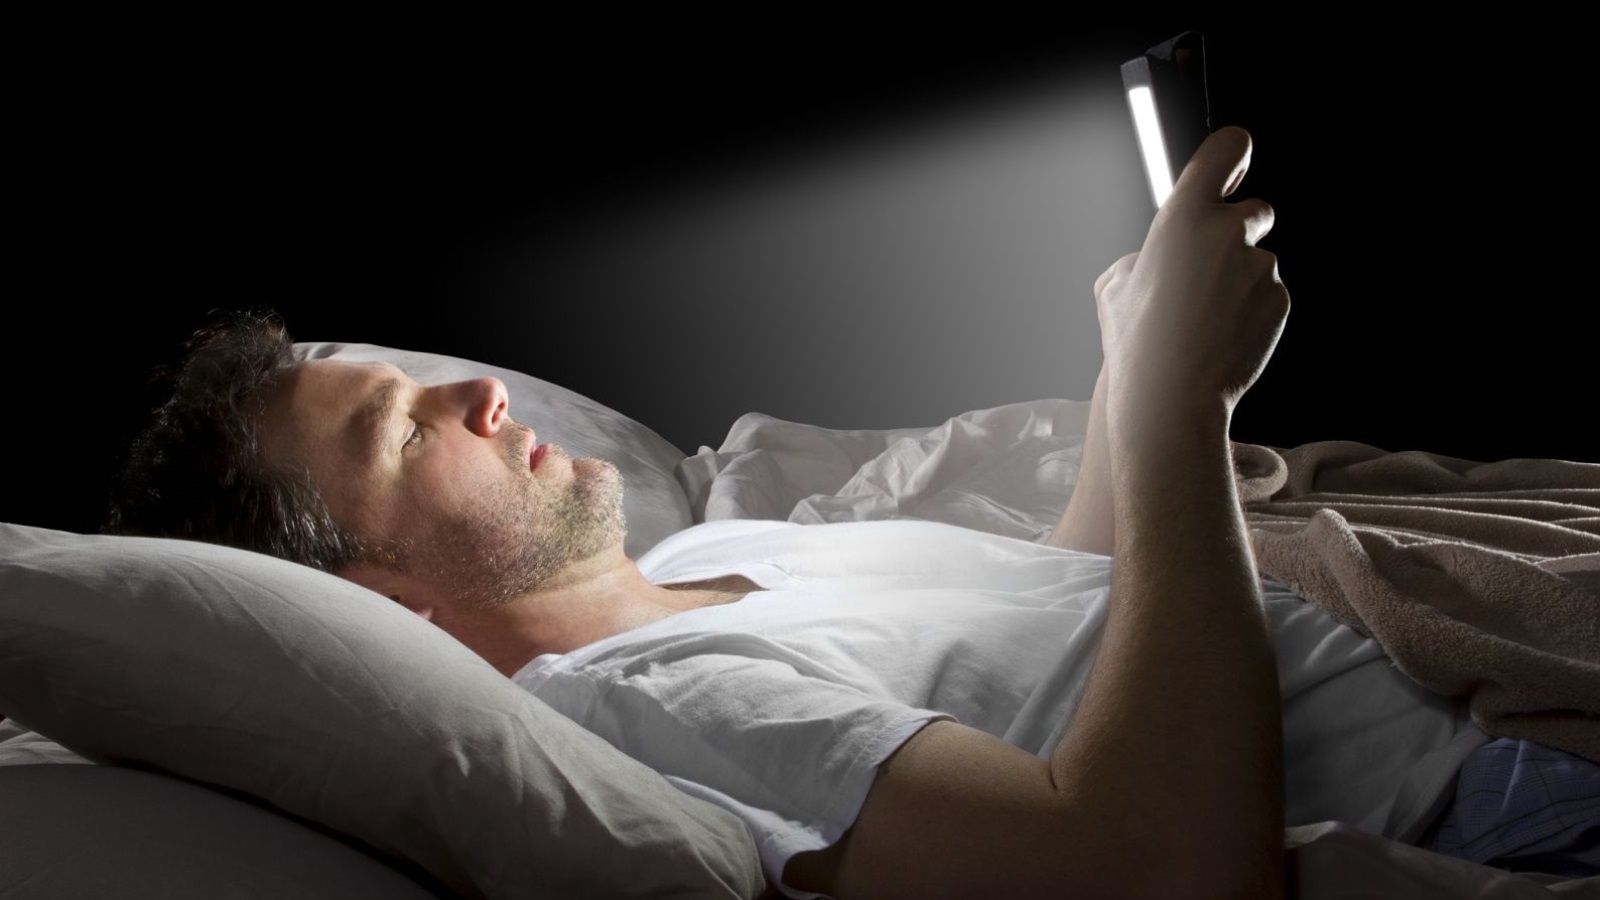 ‪التلوث الضوئي ووهج الأجهزة الإلكترونية يغيران أنماط النوم‬ التلوث الضوئي ووهج الأجهزة الإلكترونية يغيران أنماط النوم (مواقع التواصل)